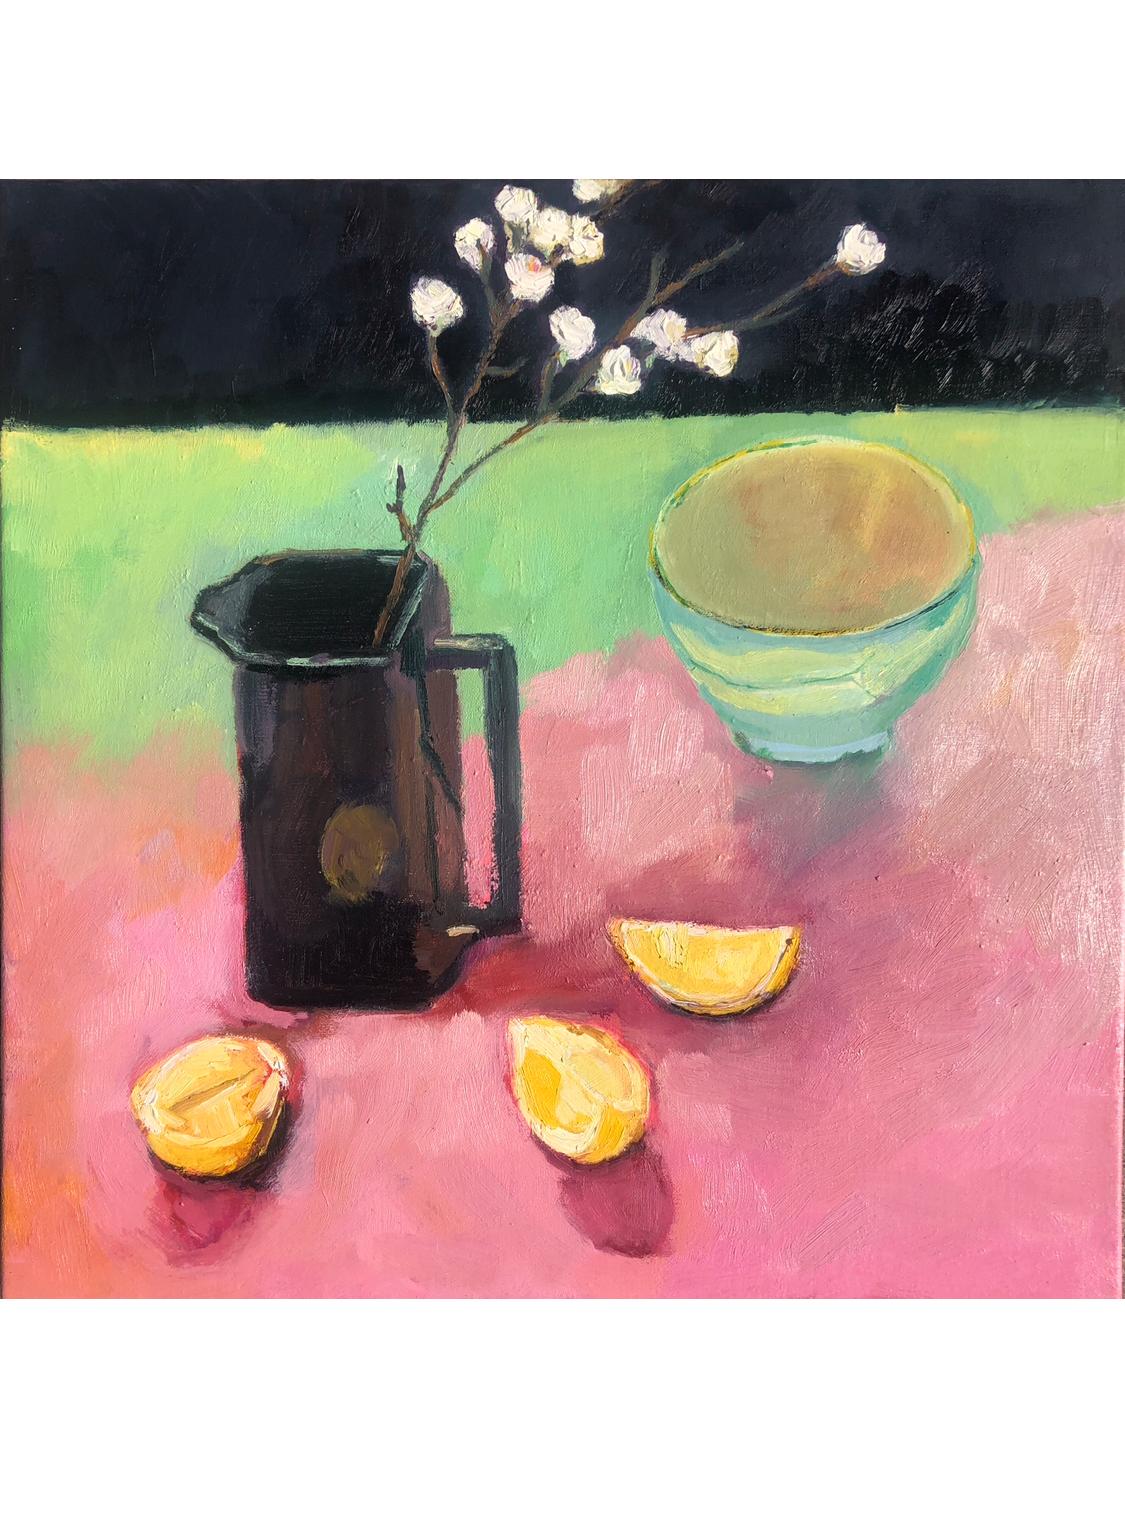 Pichet à whisky avec fleur de pomme sur toile, peinture de Maggie Laporte-Banks